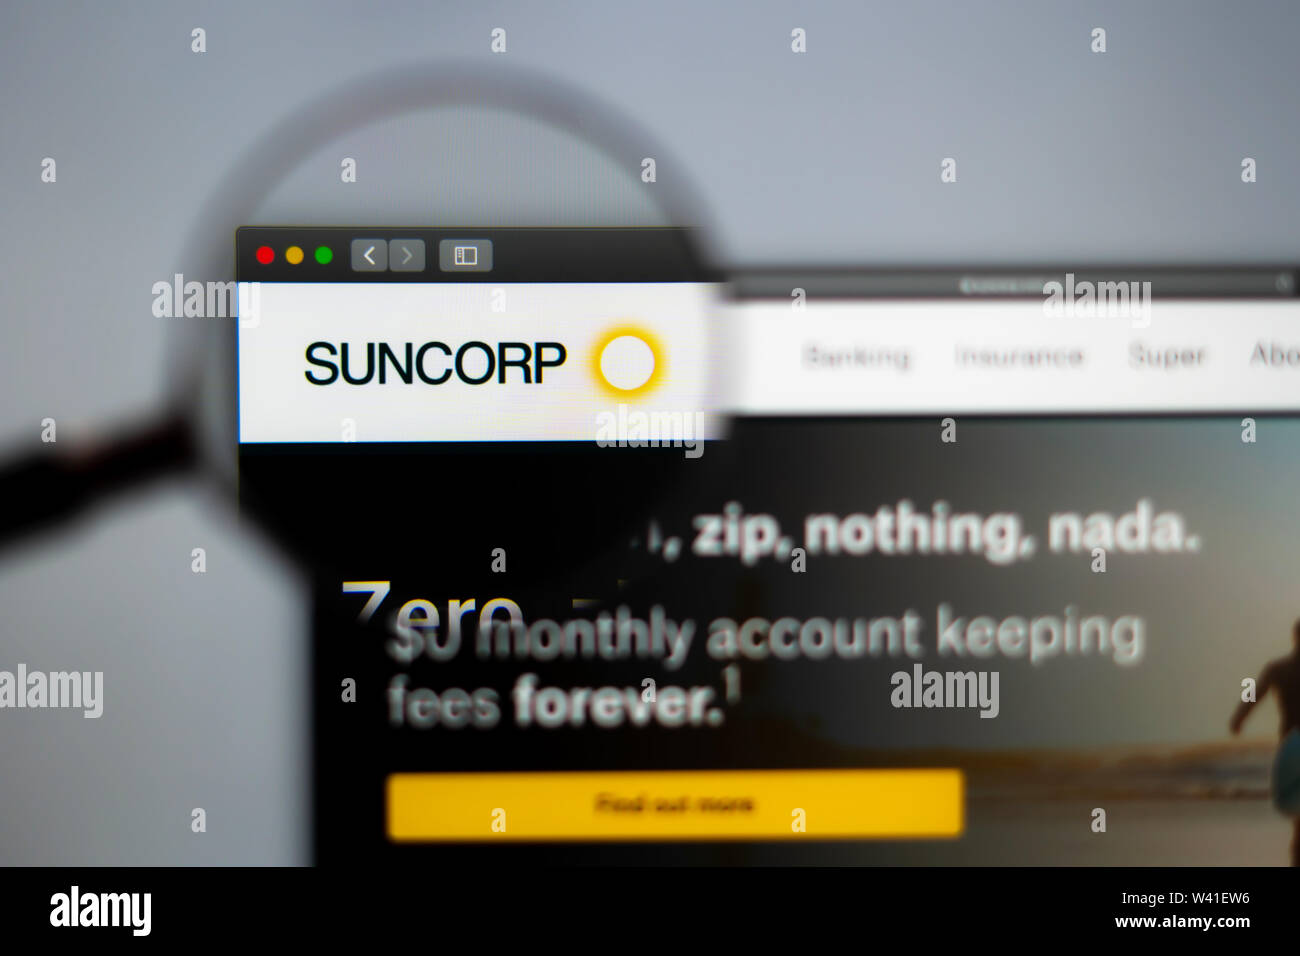 Suncorp Startseite. Nahaufnahme von SunCorp Logo. Kann als illustrative für Medien, Marketing oder Business Konzept verwendet werden. Stockfoto